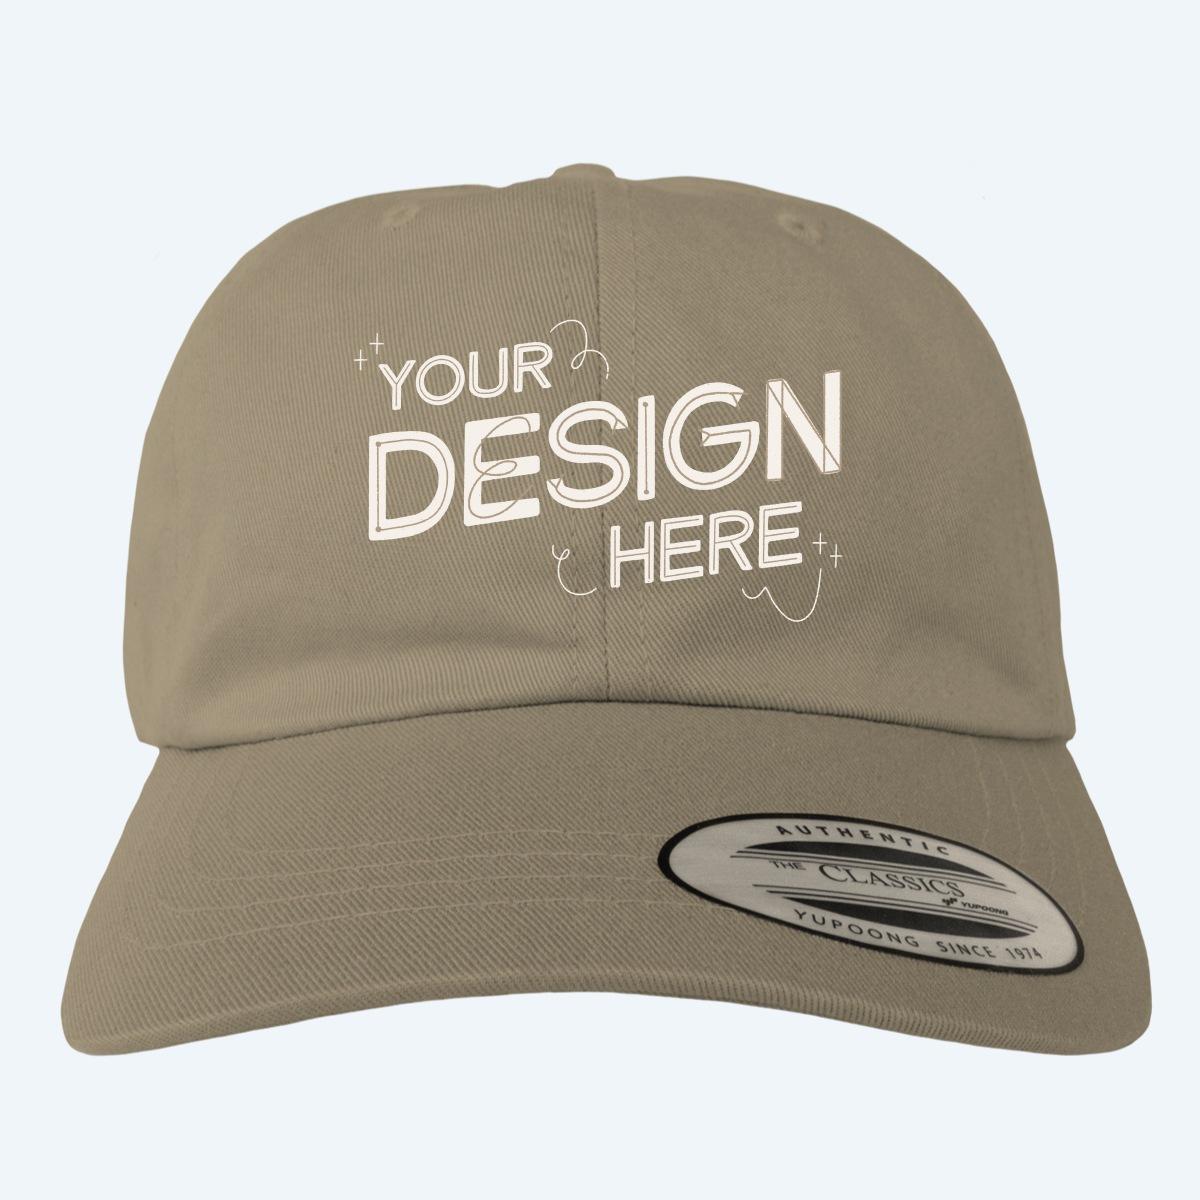 Classic Baseball Cap Design Custom Hats Online Bonfire